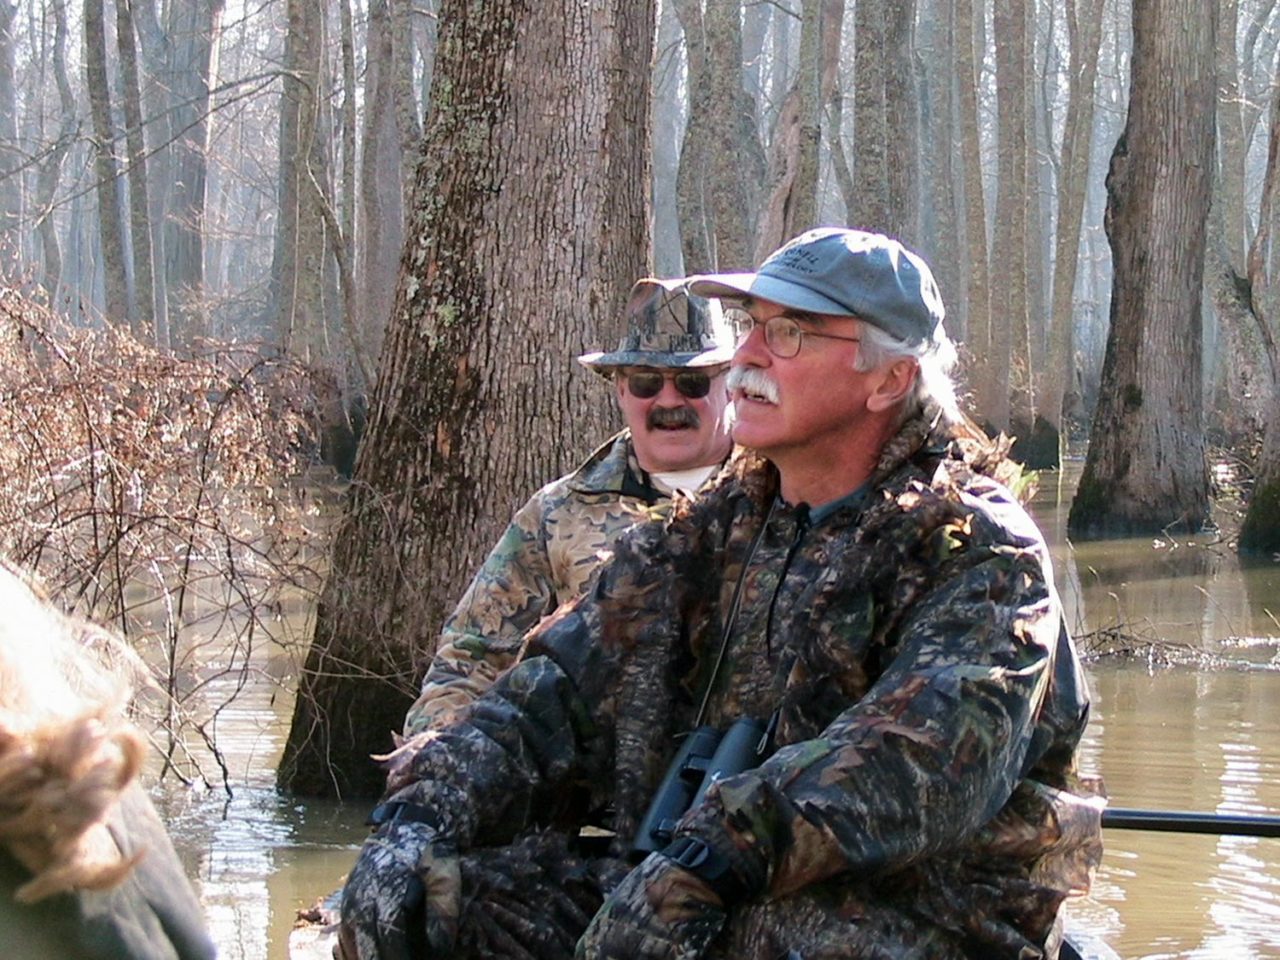 John Fitzpatrick wearing camo, sitting in canoe in swamp